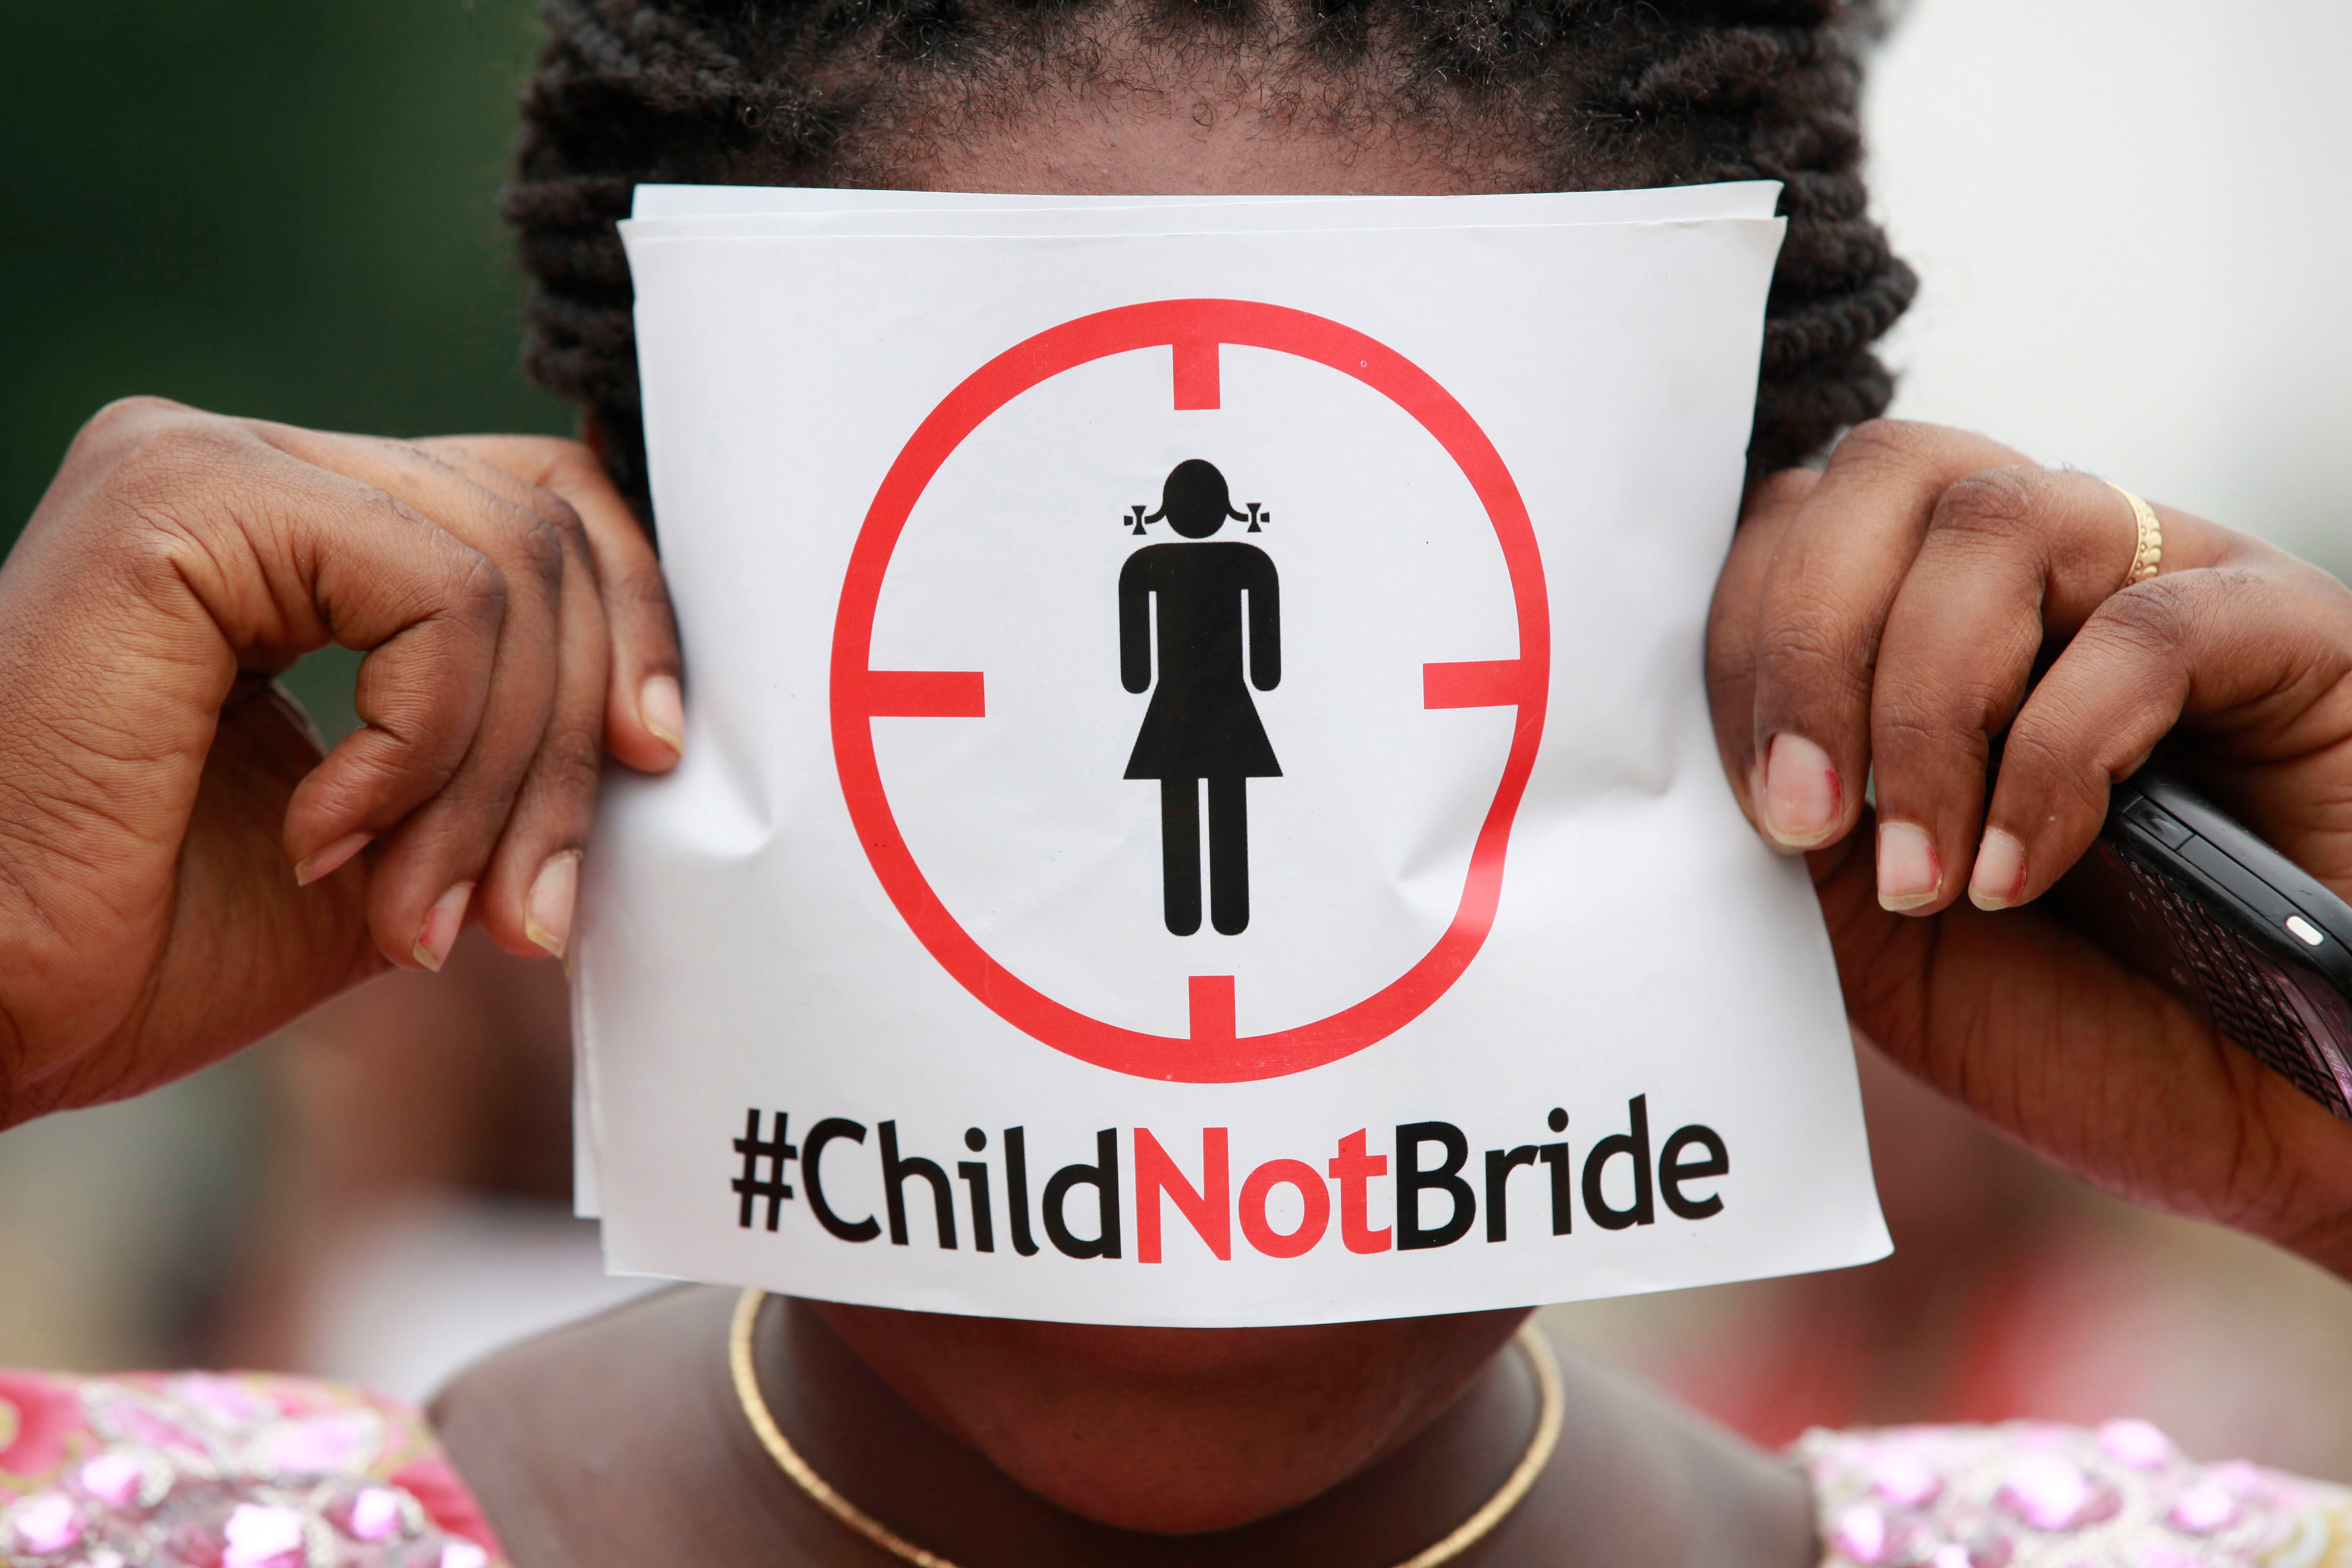 Cette femme tenait une feuille avec le hashtag #ChildNotBride (« Enfant, non épouse ») lors d’une manifestation contre les mariages d'enfants, tenue à Lagos, au Nigeria, en juillet 2013.